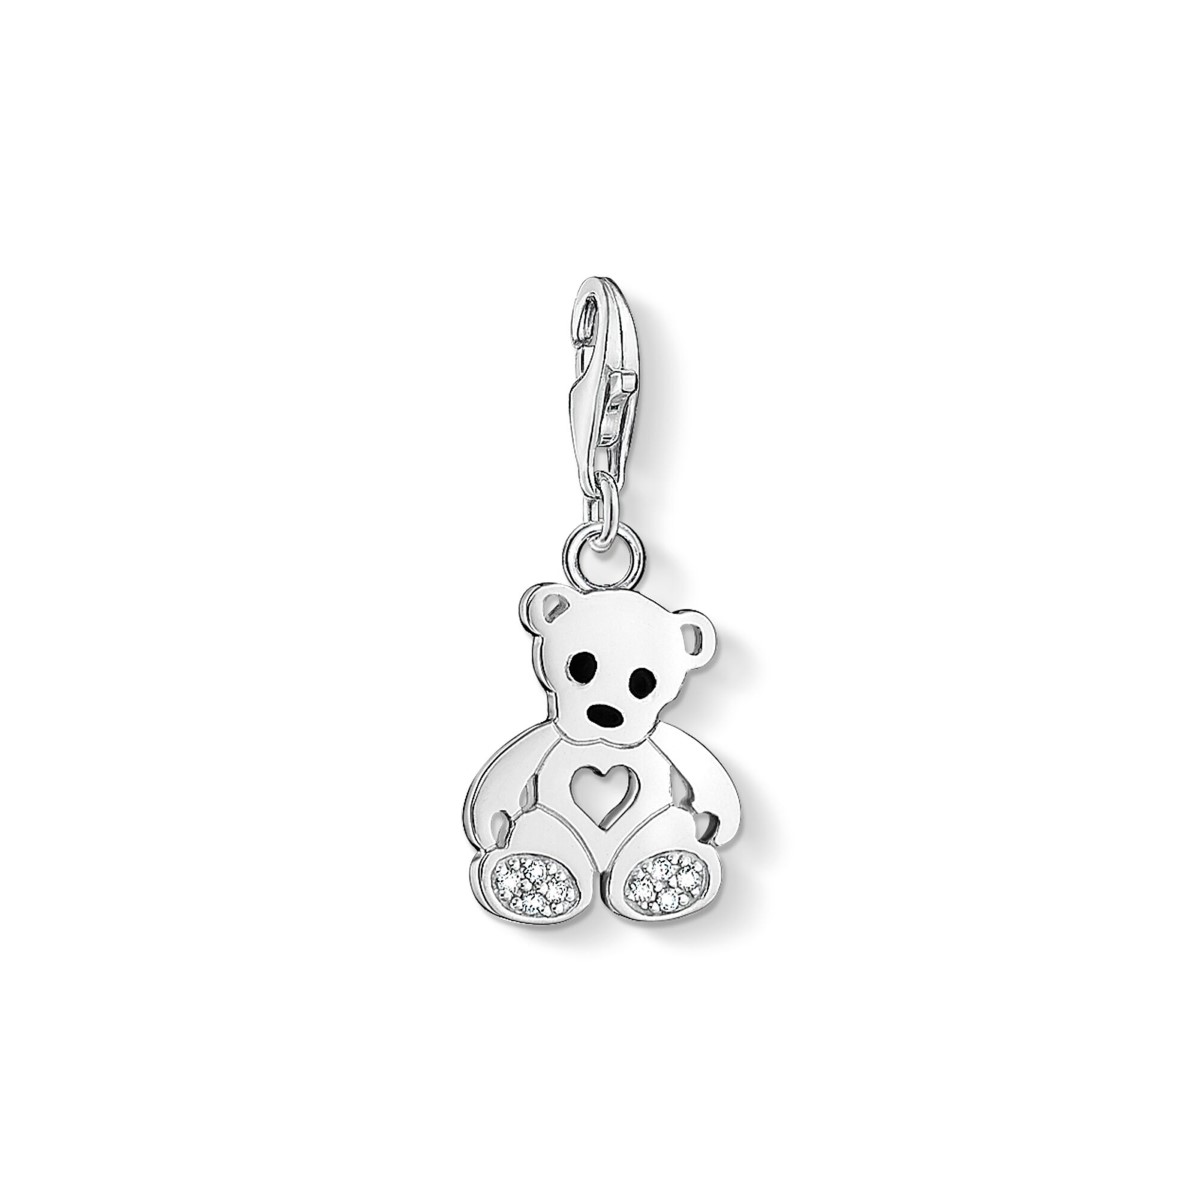 Photos - Other Jewellery Thomas Sabo Charm Pendant - Teddy Bear with Heart 